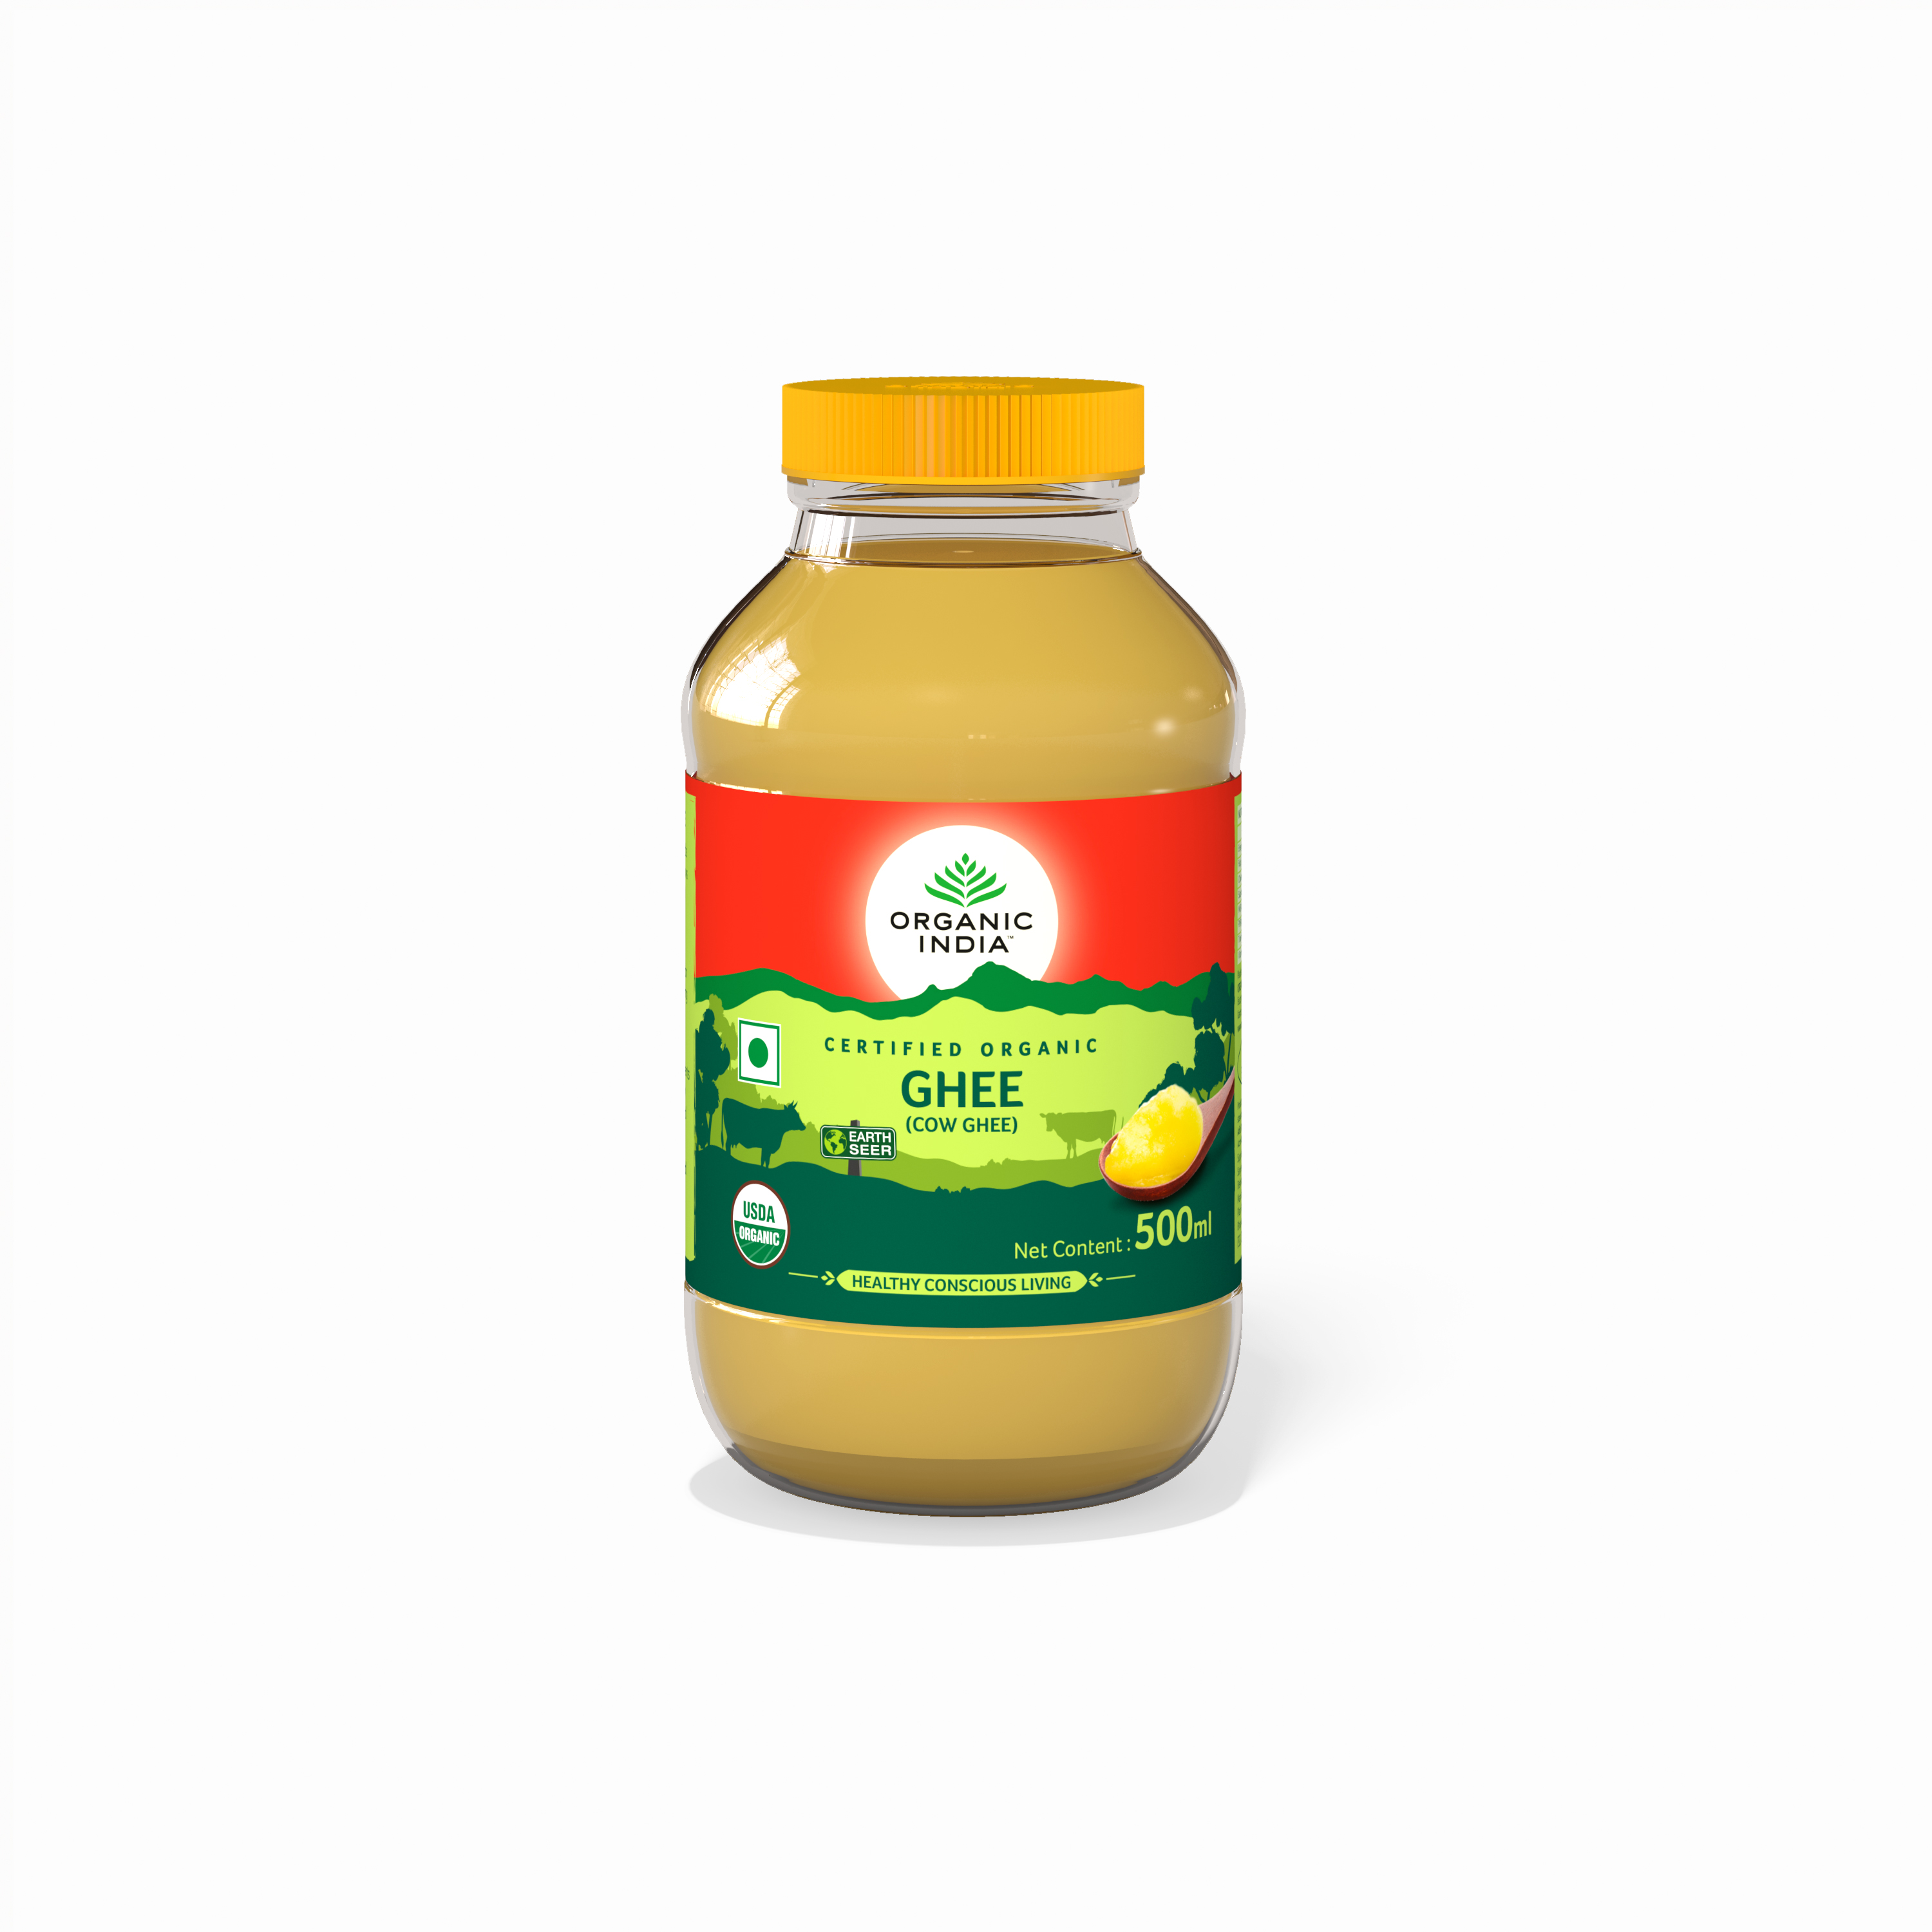 Buy Organic India Desi Ghee at Best Price Online